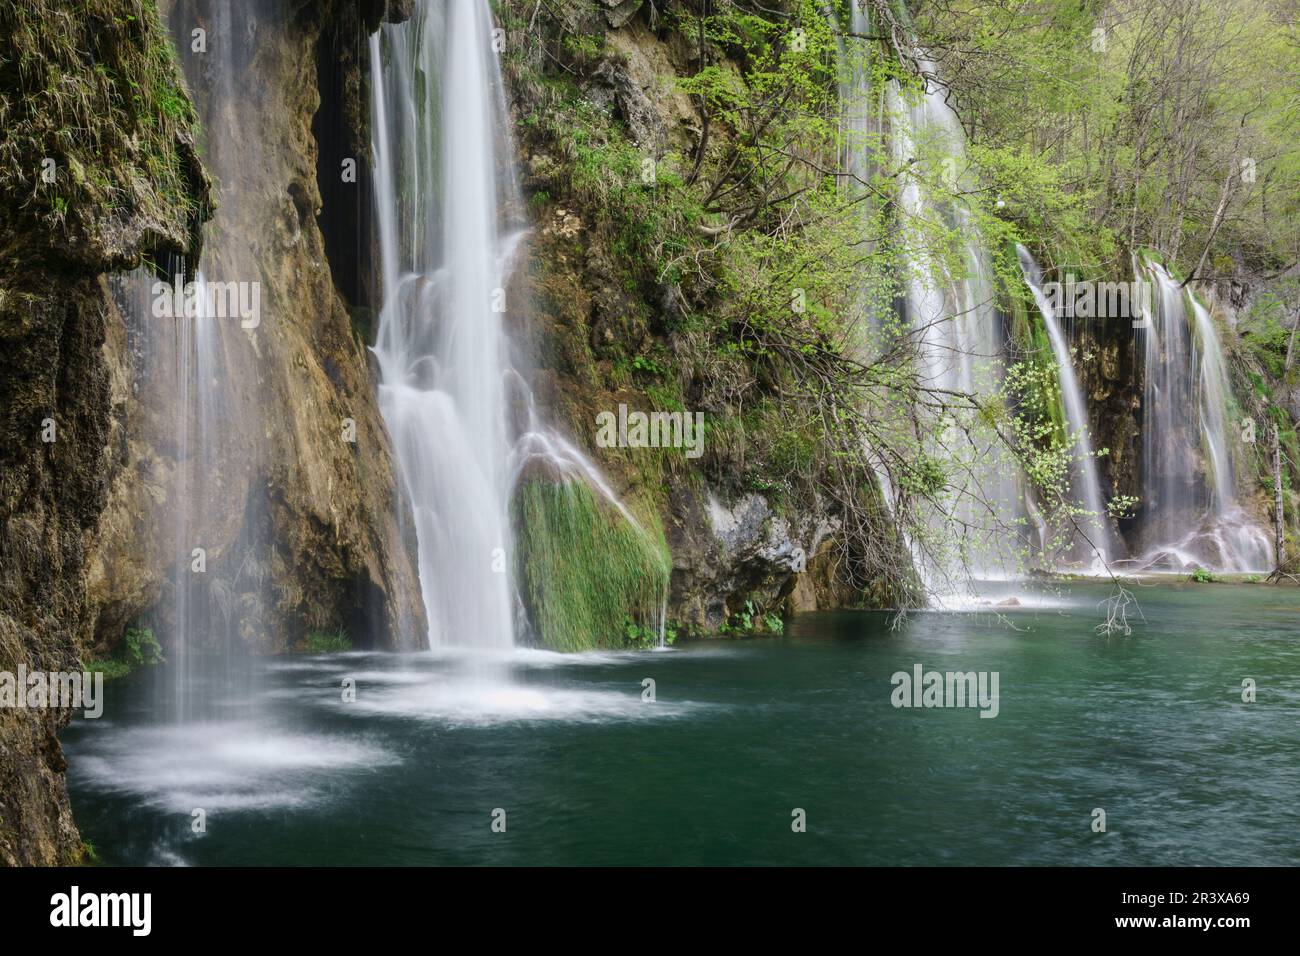 Parque Nacional de los Lagos de Plitvice, Patrimonio Mundial de la UNESCO, Croacia, europa. Stock Photo